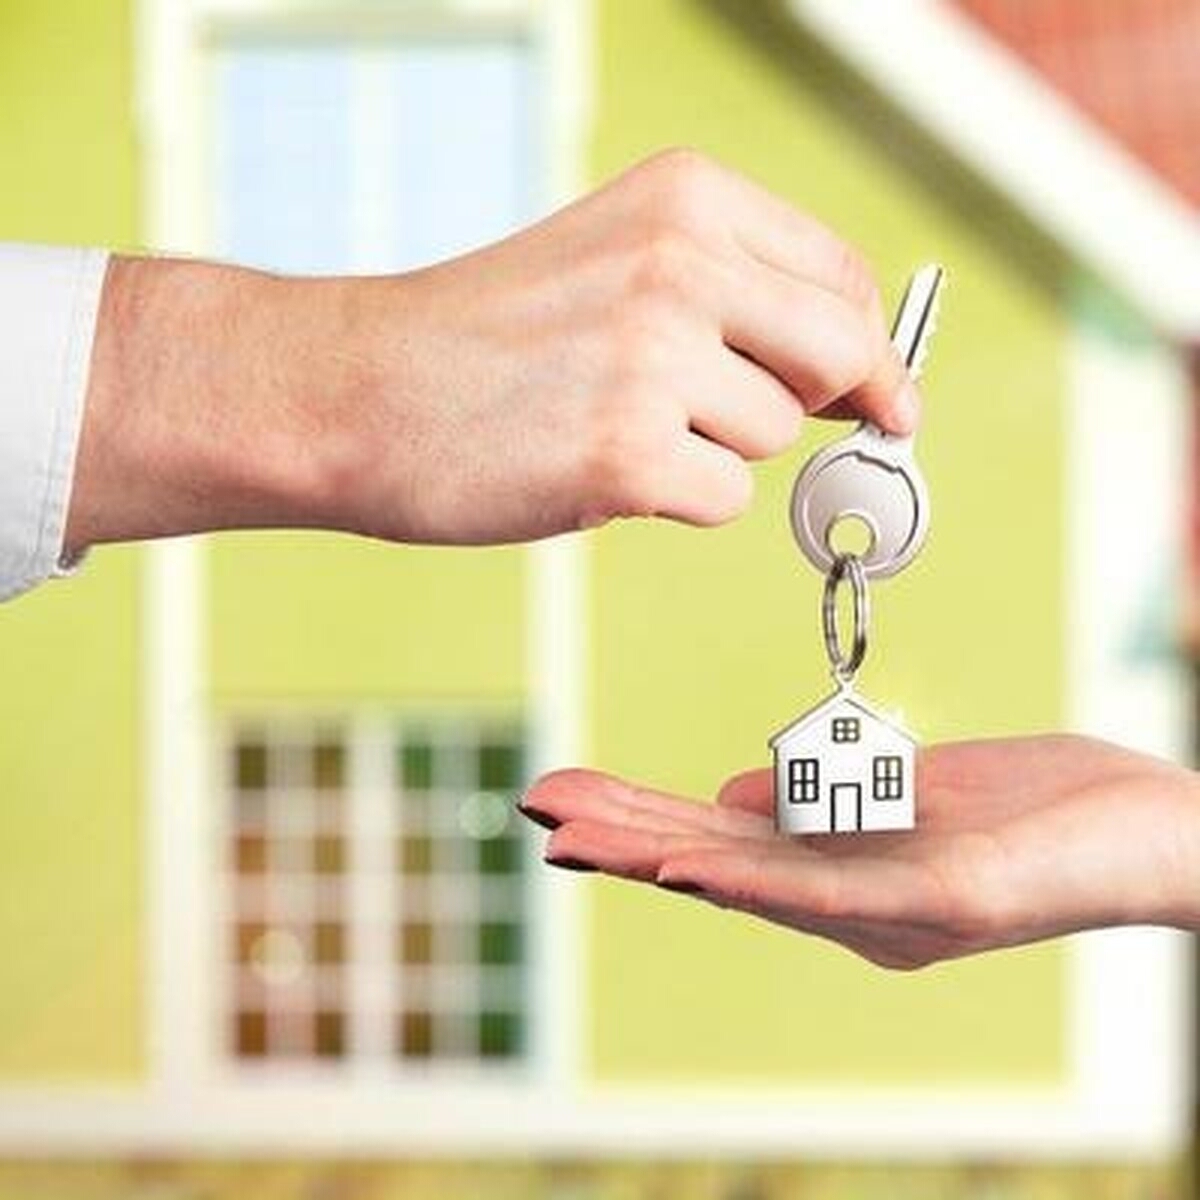 Определение срока владения недвижимостью при продаже - какая дата считается ключевой?